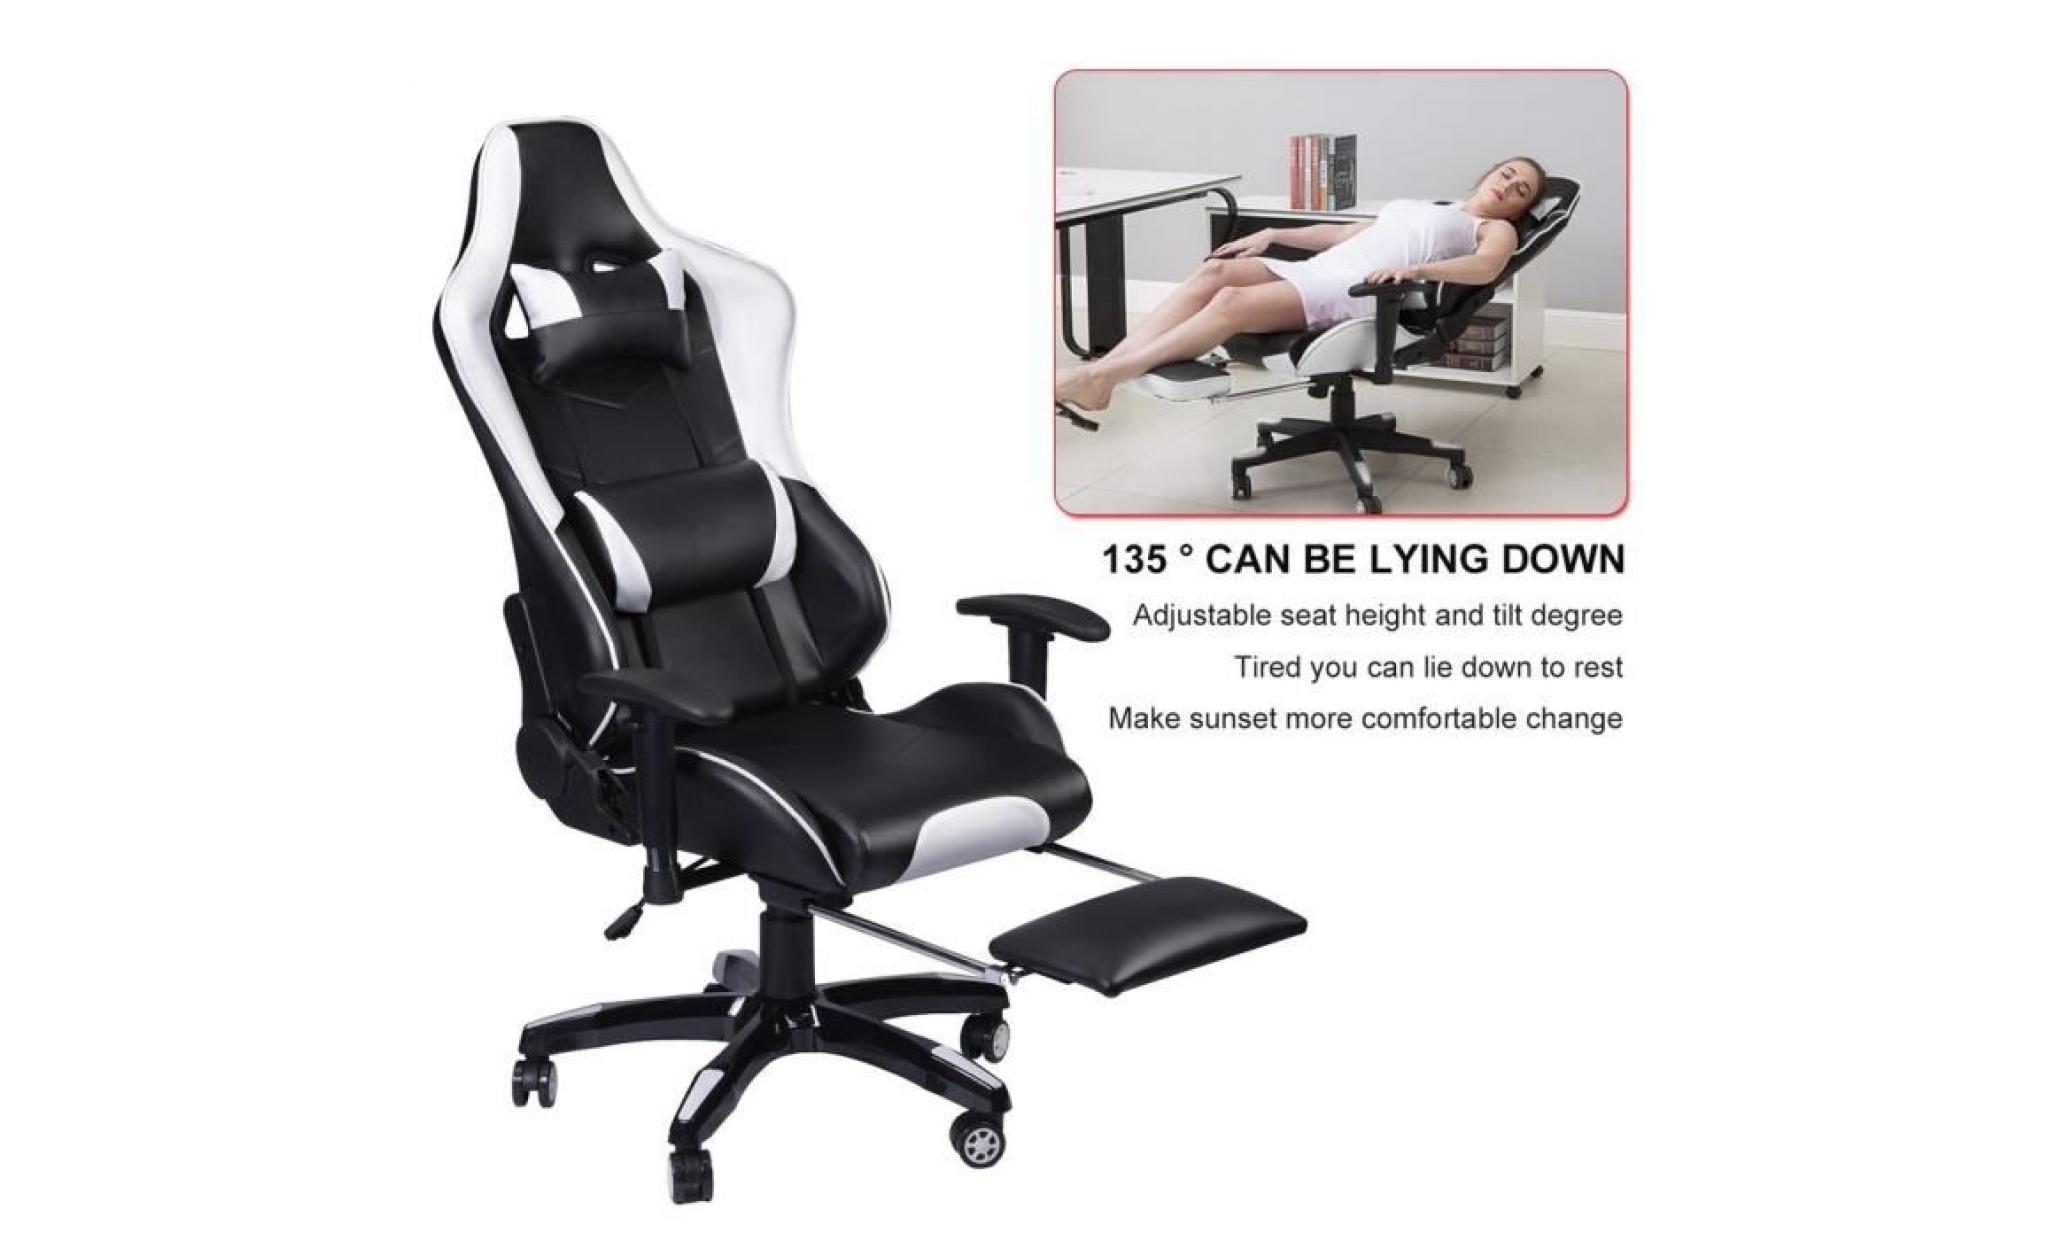 blanc noir chic chaise de jeu vidéo fauteuil pivotant pu cuir hautur réglable